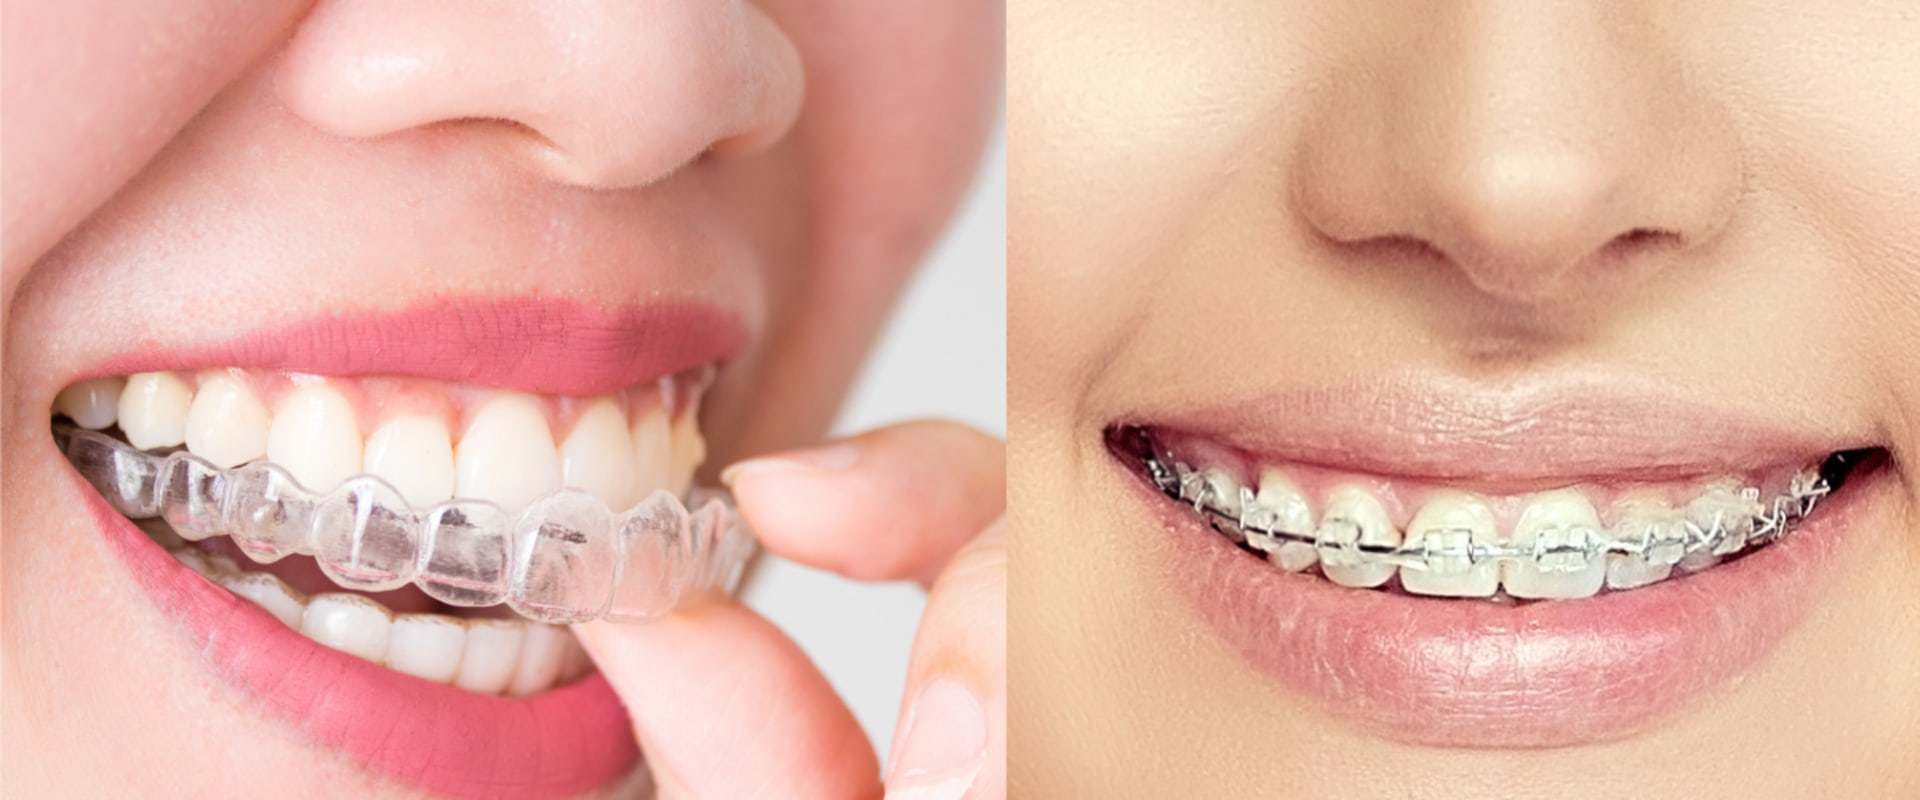 Is it better to wear braces or invisalign?